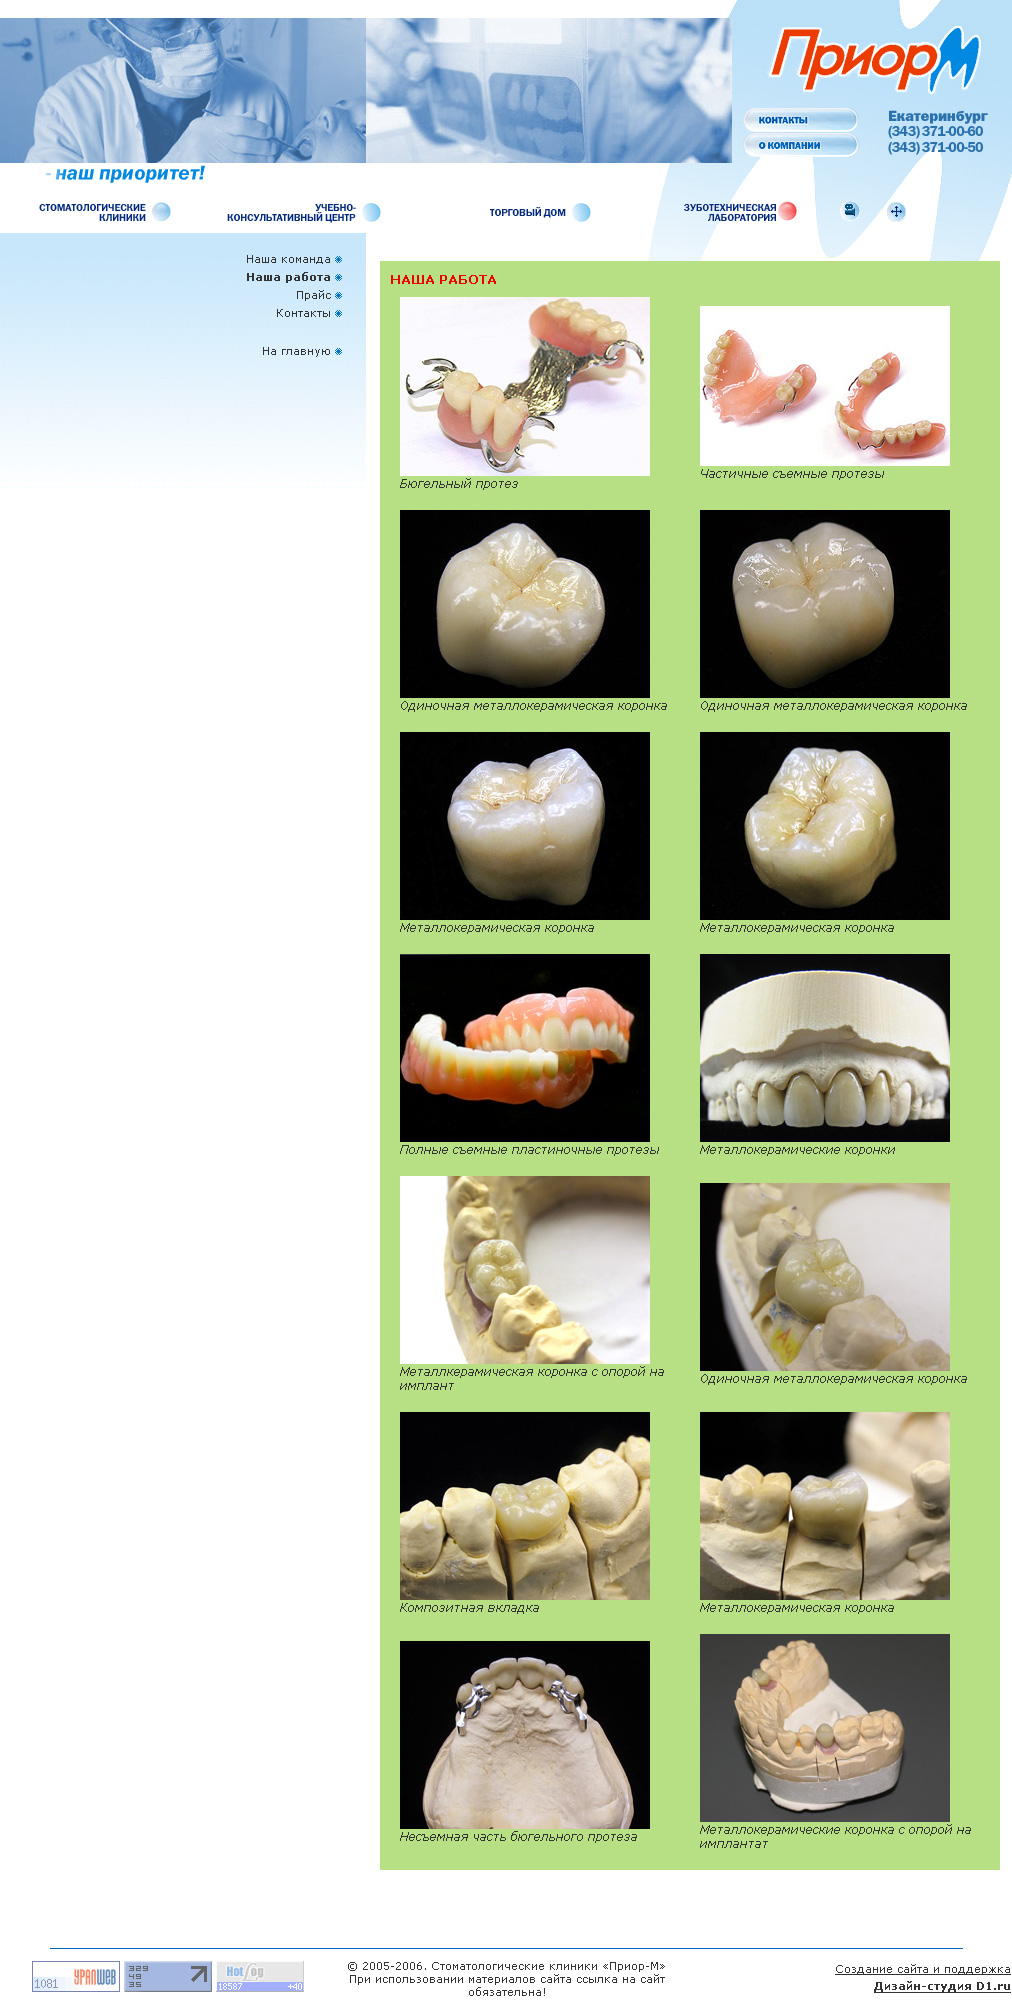 Приор-М - сеть стоматологических клиник